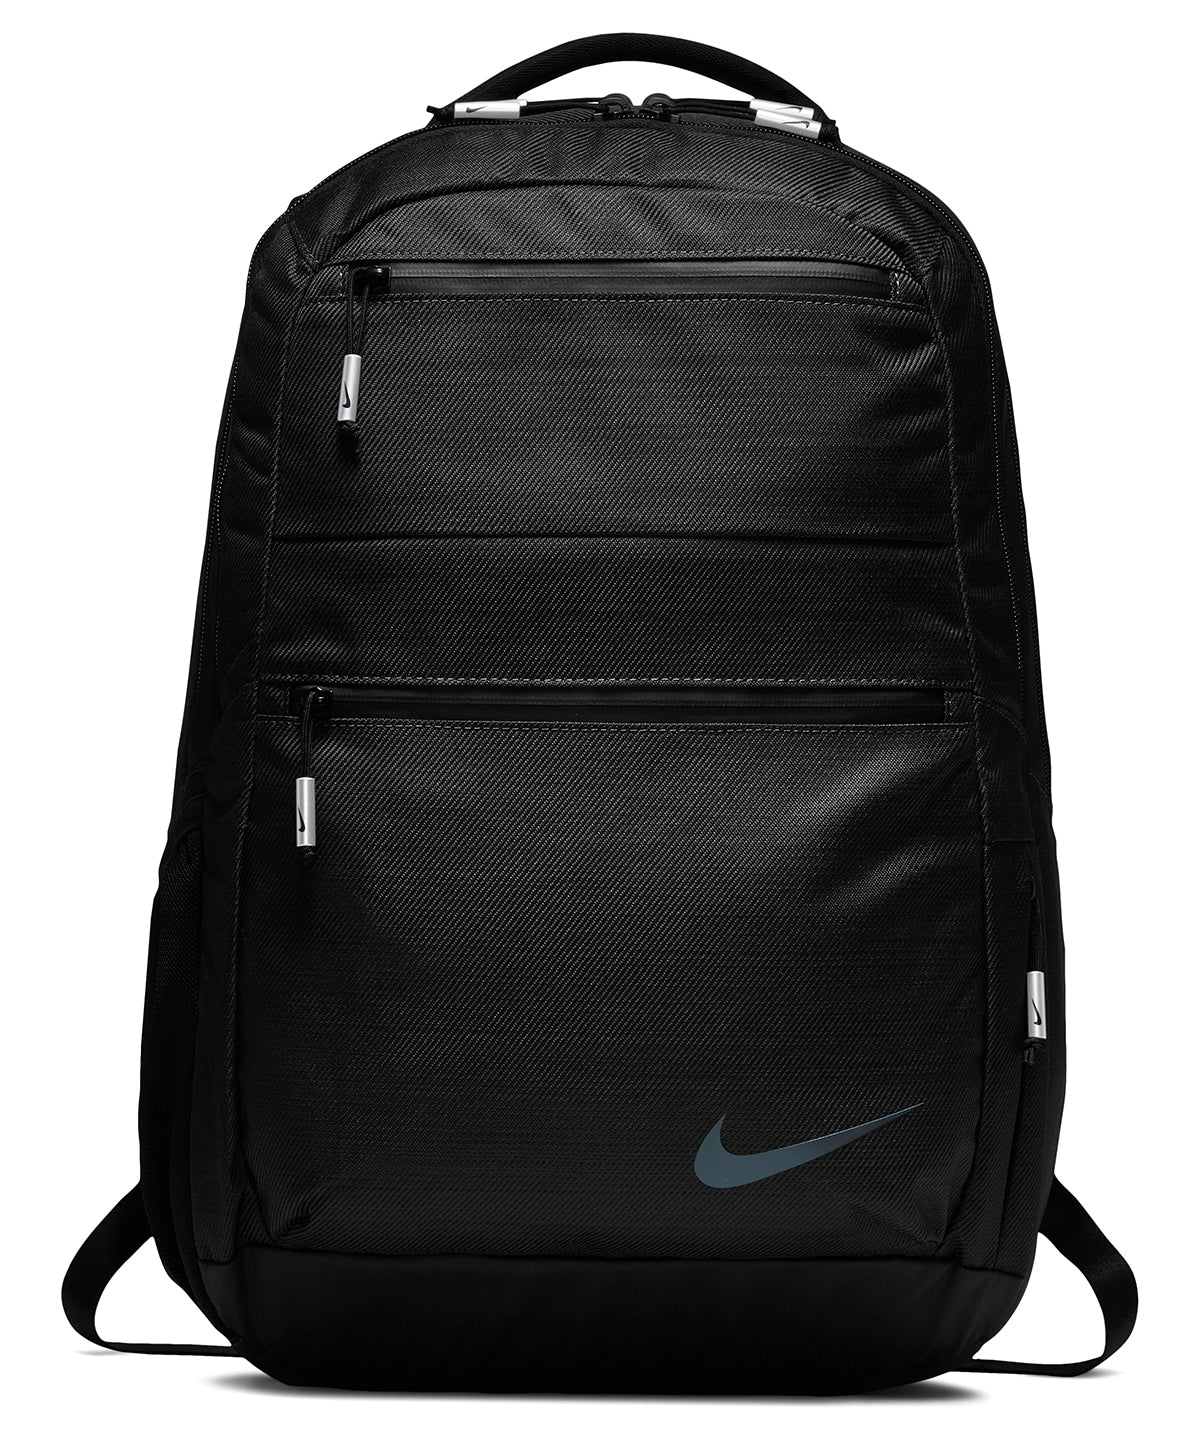 Töskur - Nike Backpack